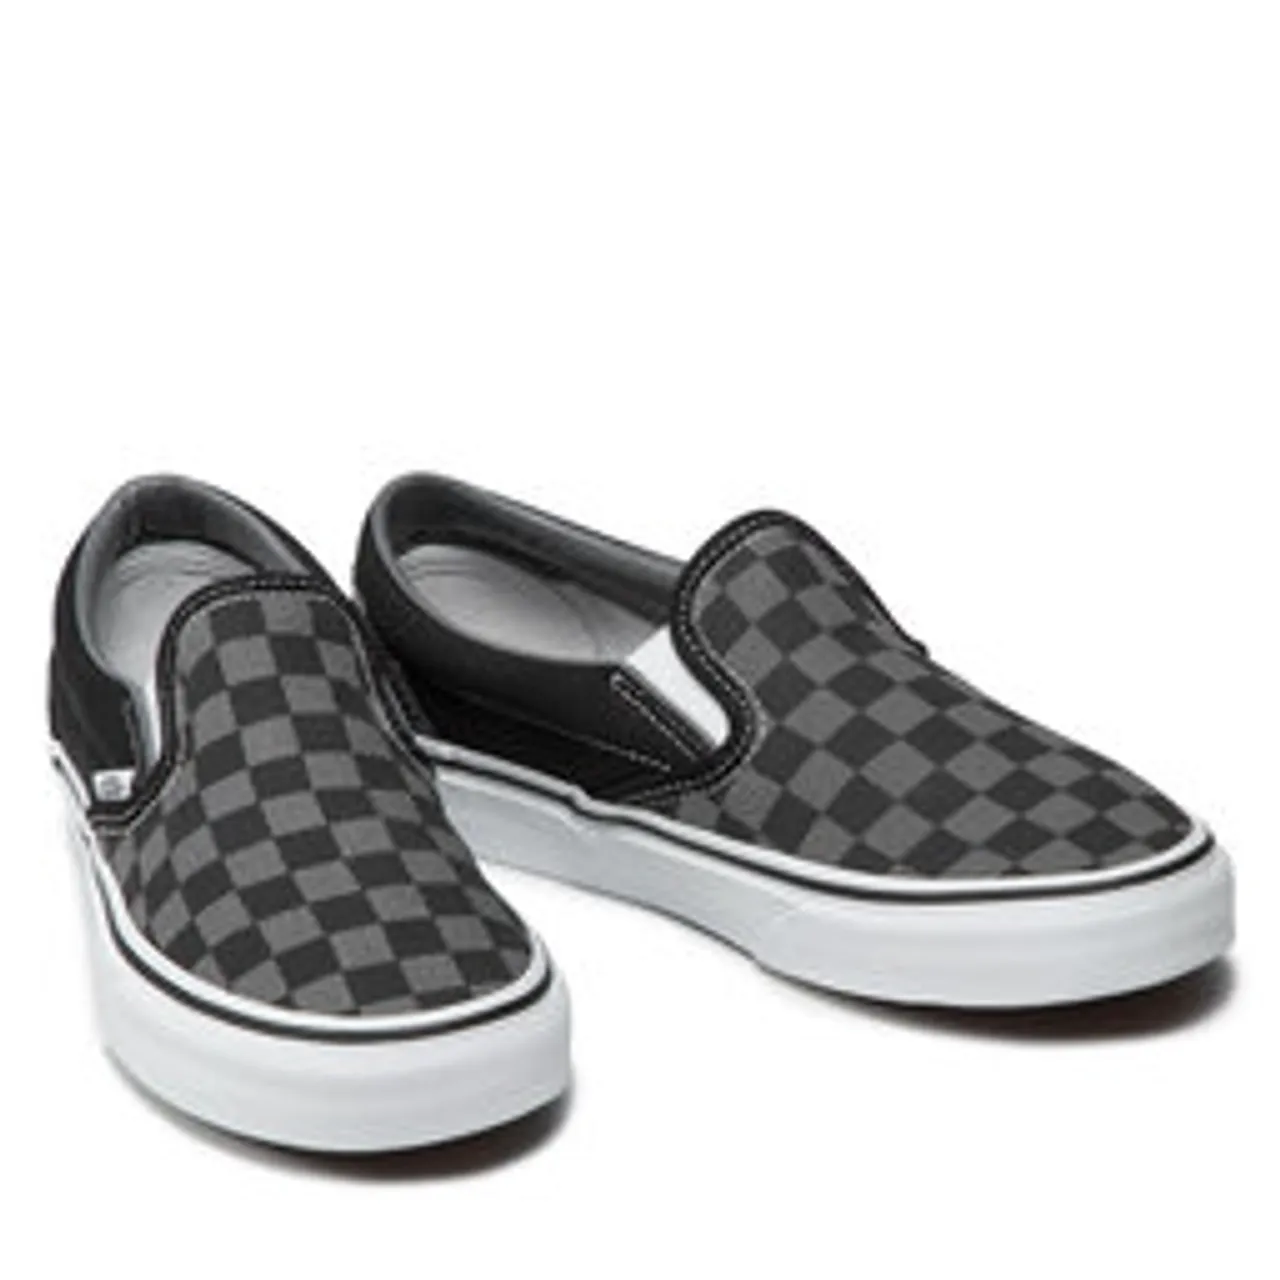 Sneakers aus Stoff Vans Classic Slip-On VN000EYEBPJ Black/Pewter Checkerboard